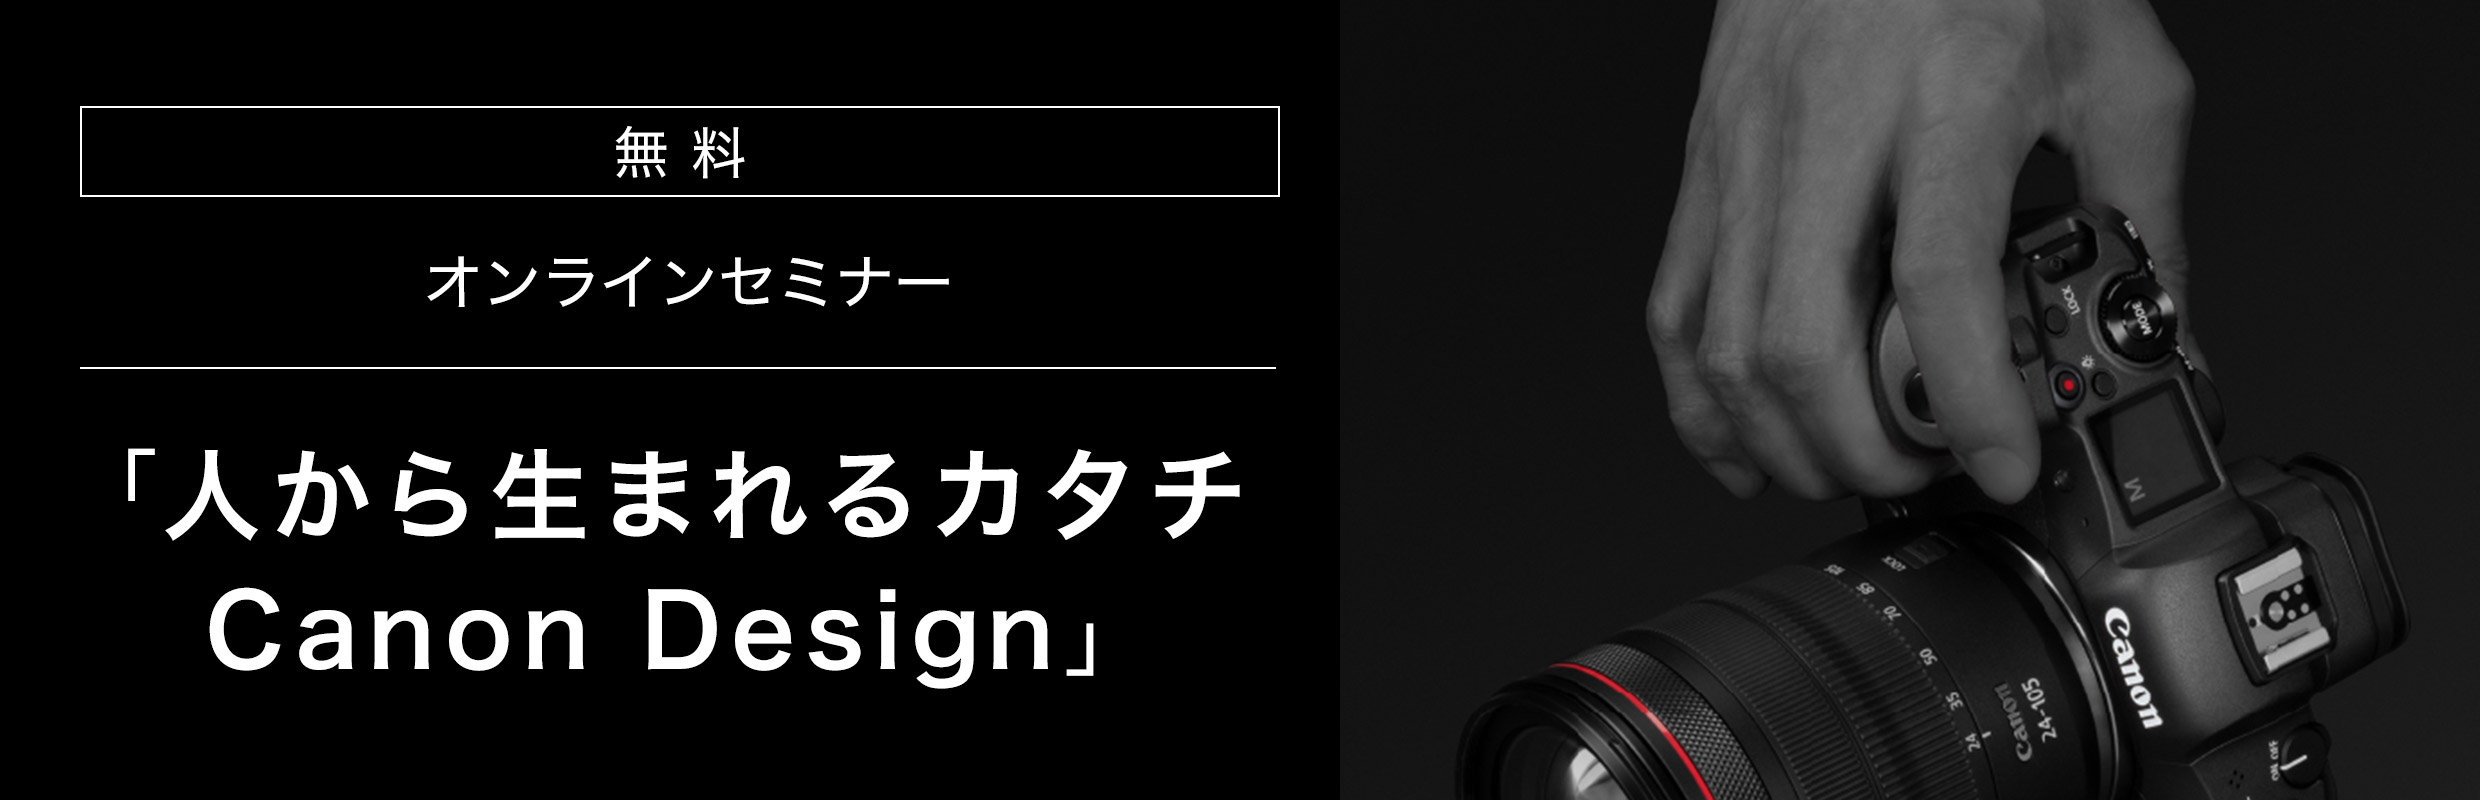 デザイナーが語るキヤノンデザイン オンラインセミナー 人から生まれるカタチ Canon Design 申込受付中 Departure 世界の新しいクリエイティビティを紹介するサイト